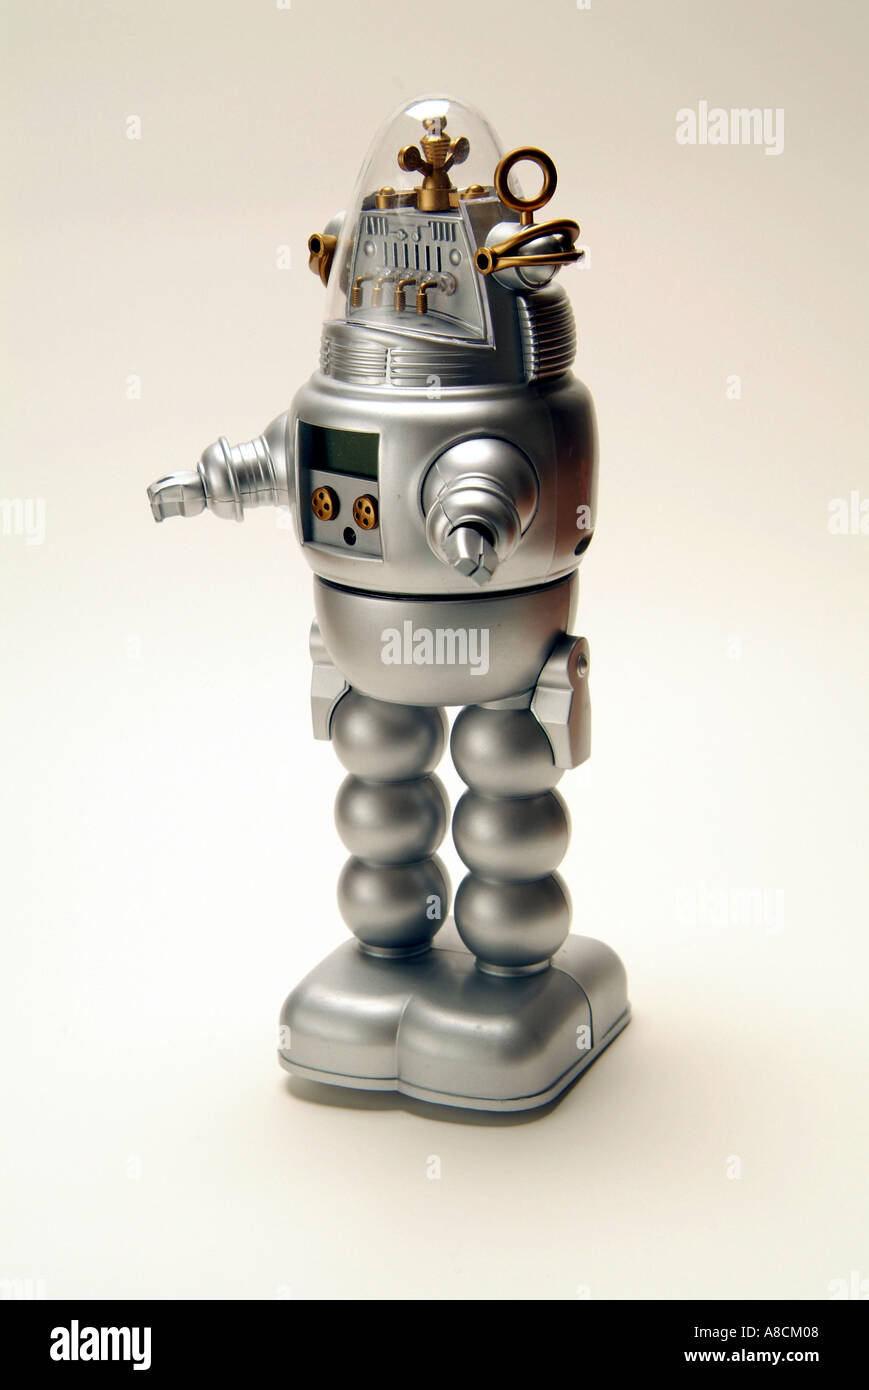 Jouet en plastique de l'enfant robot dans le style futuriste de Robby le  Robot de Planète interdite film Photo Stock - Alamy